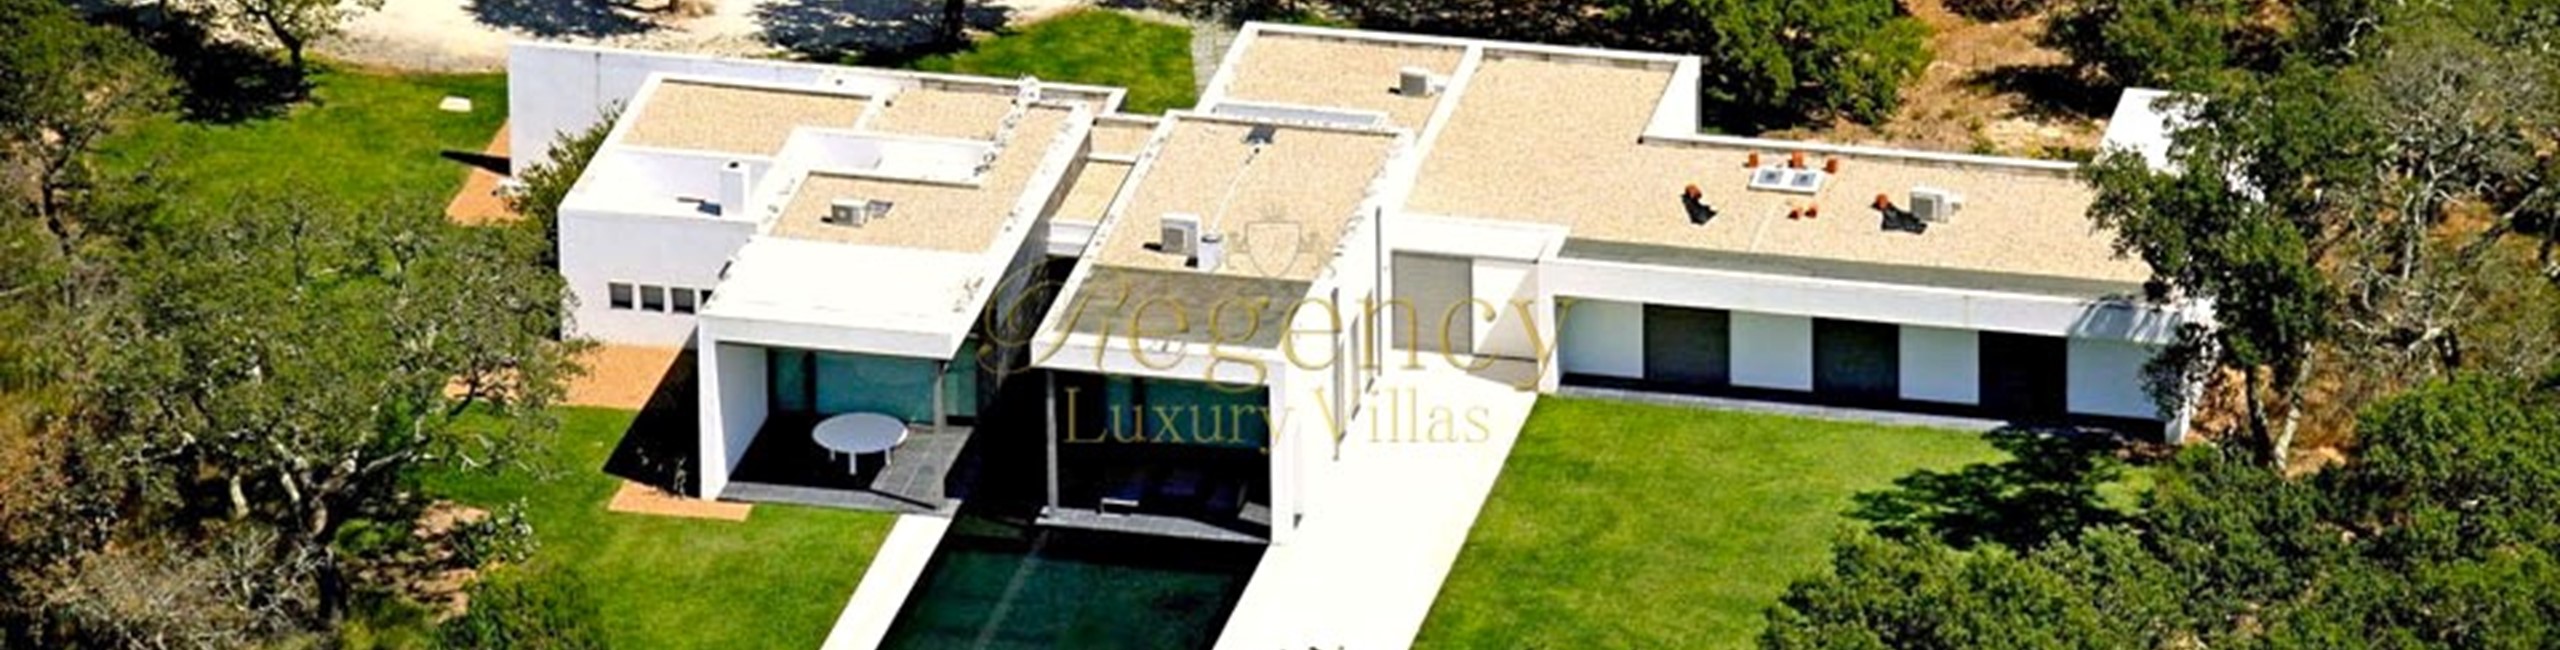 5 Bedroom Villa To Rent In Lisbon Villa Cubanite Regency Luxury Villas 16